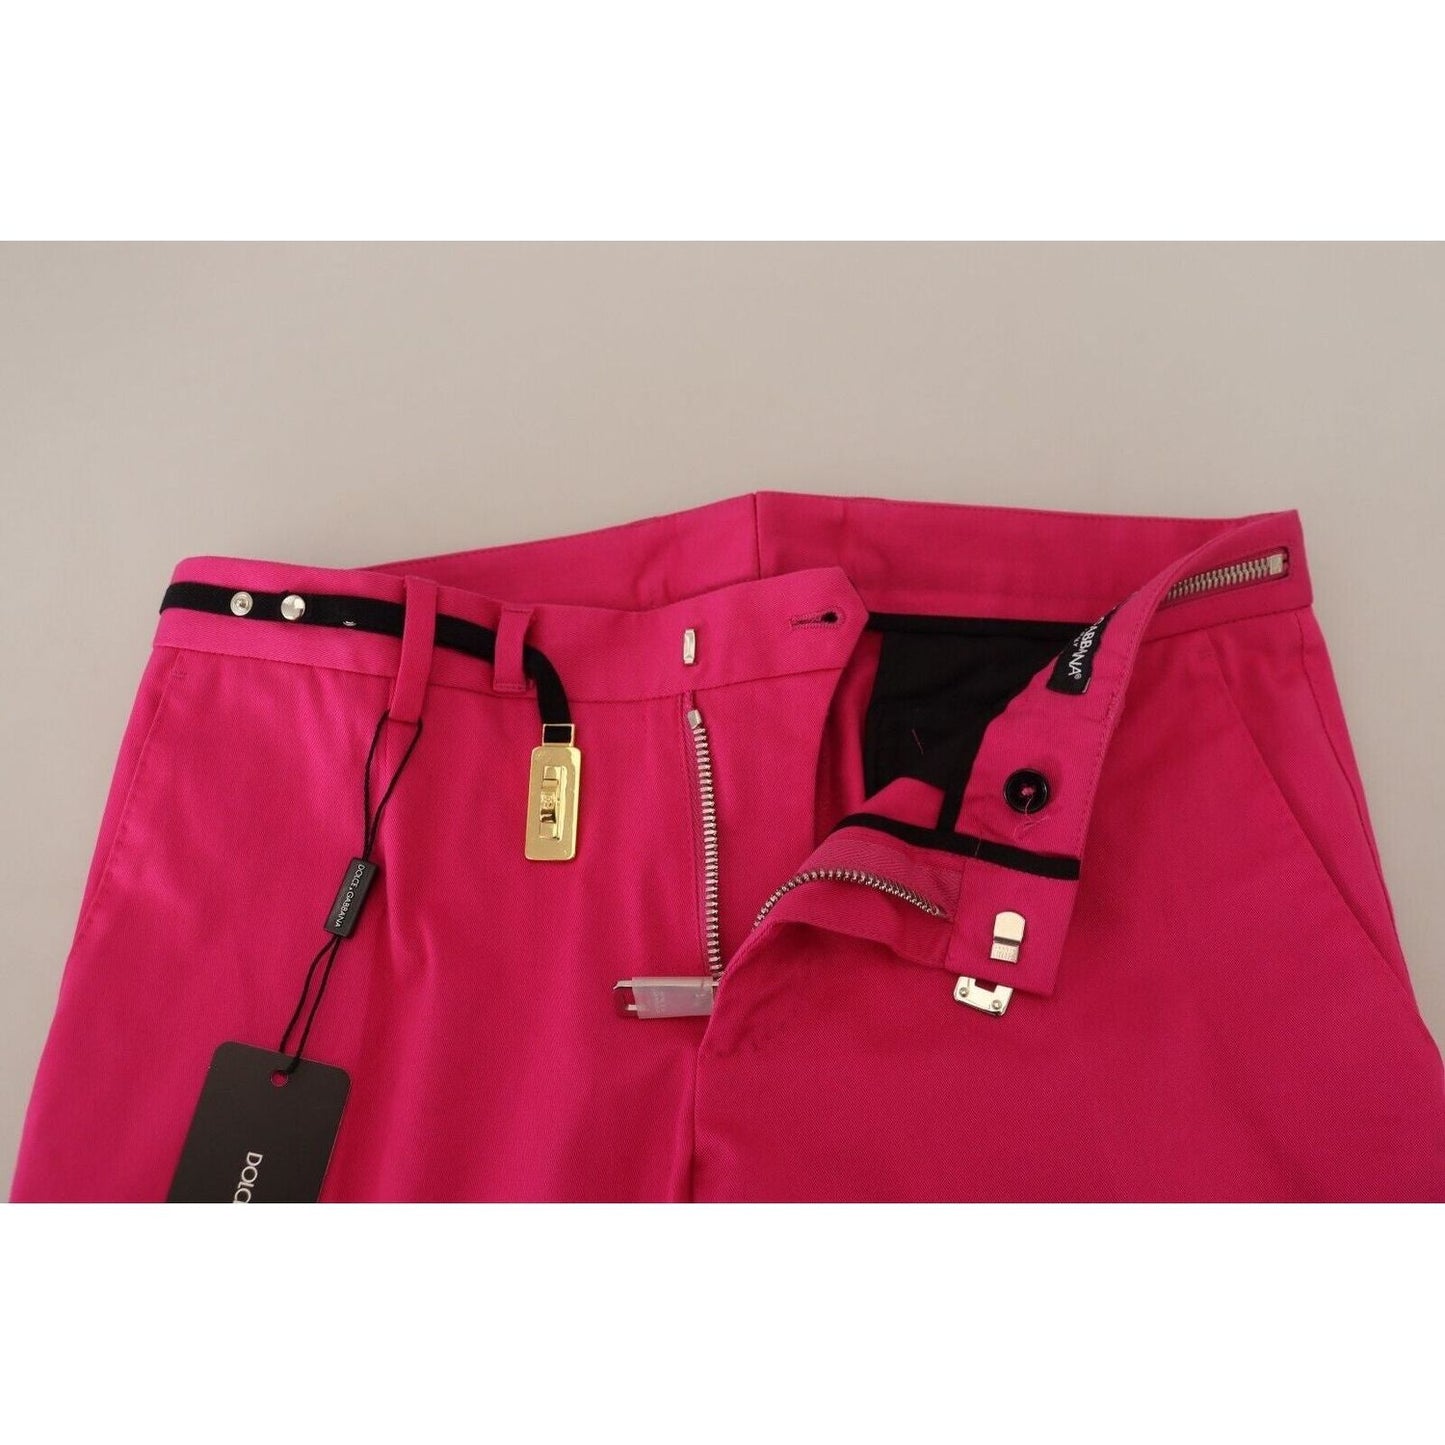 Dolce & GabbanaChic Pink Cotton Blend TrousersMcRichard Designer Brands£369.00